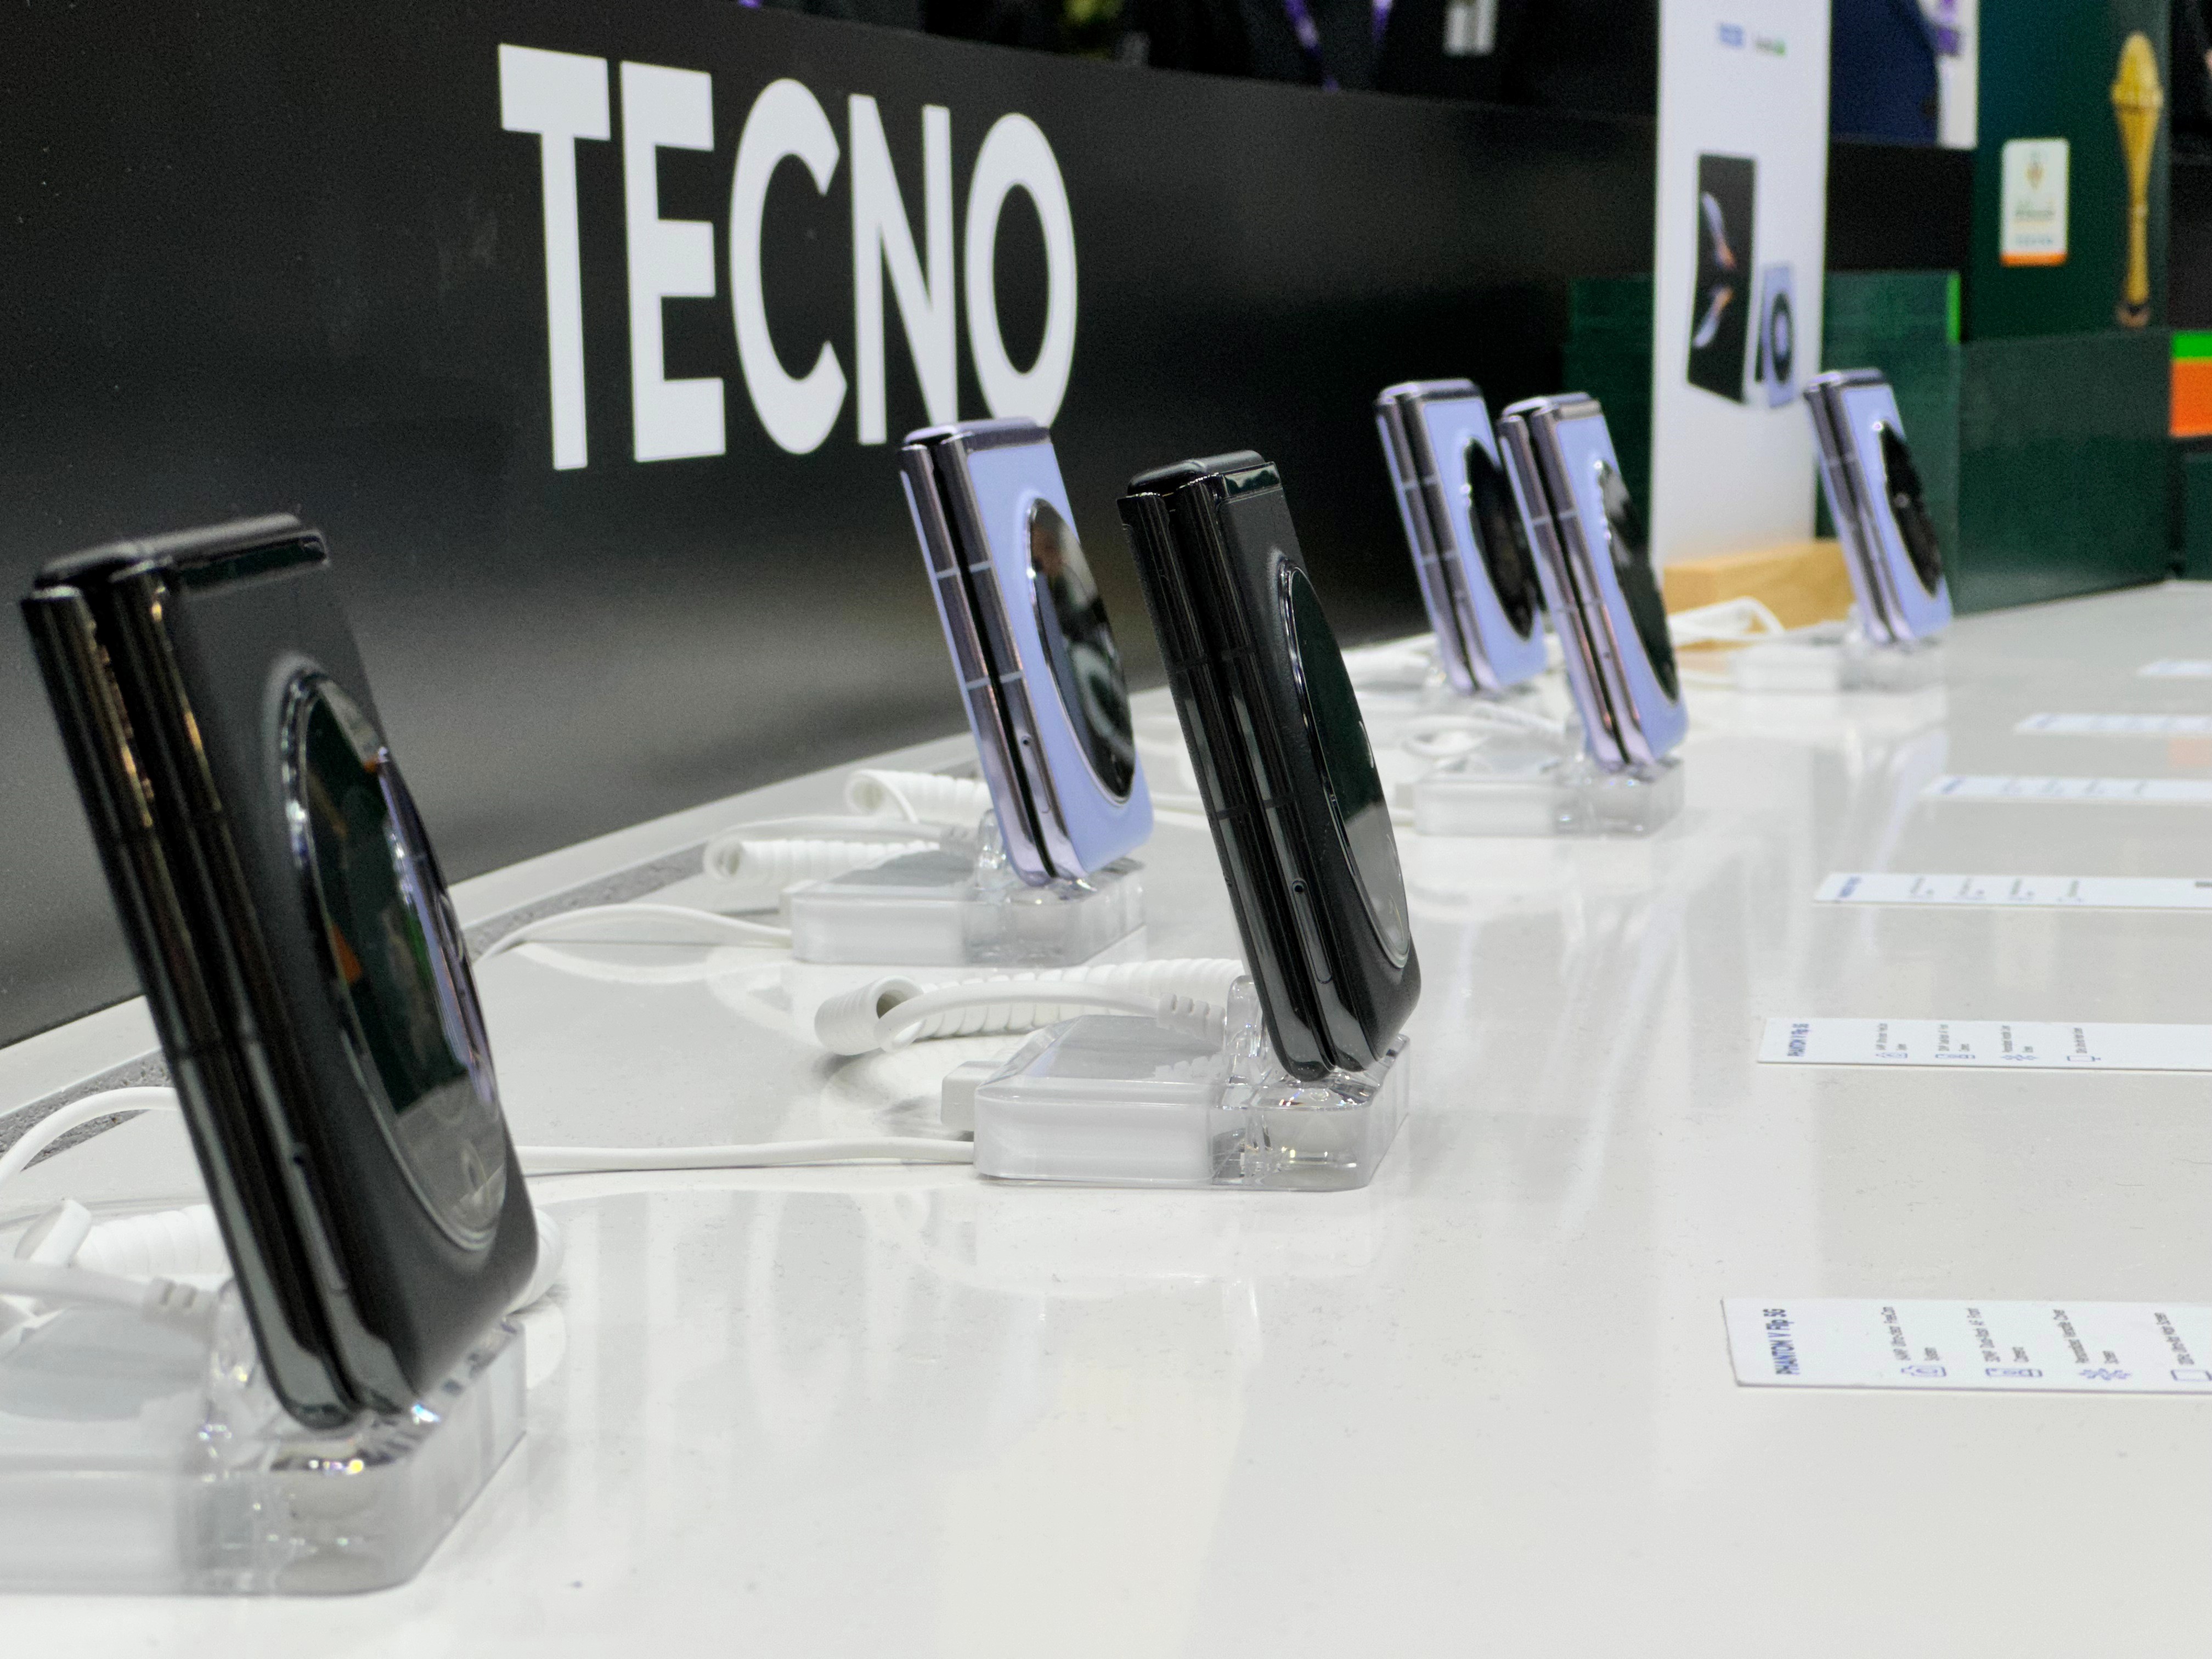 TECNO diverse range of smartphones